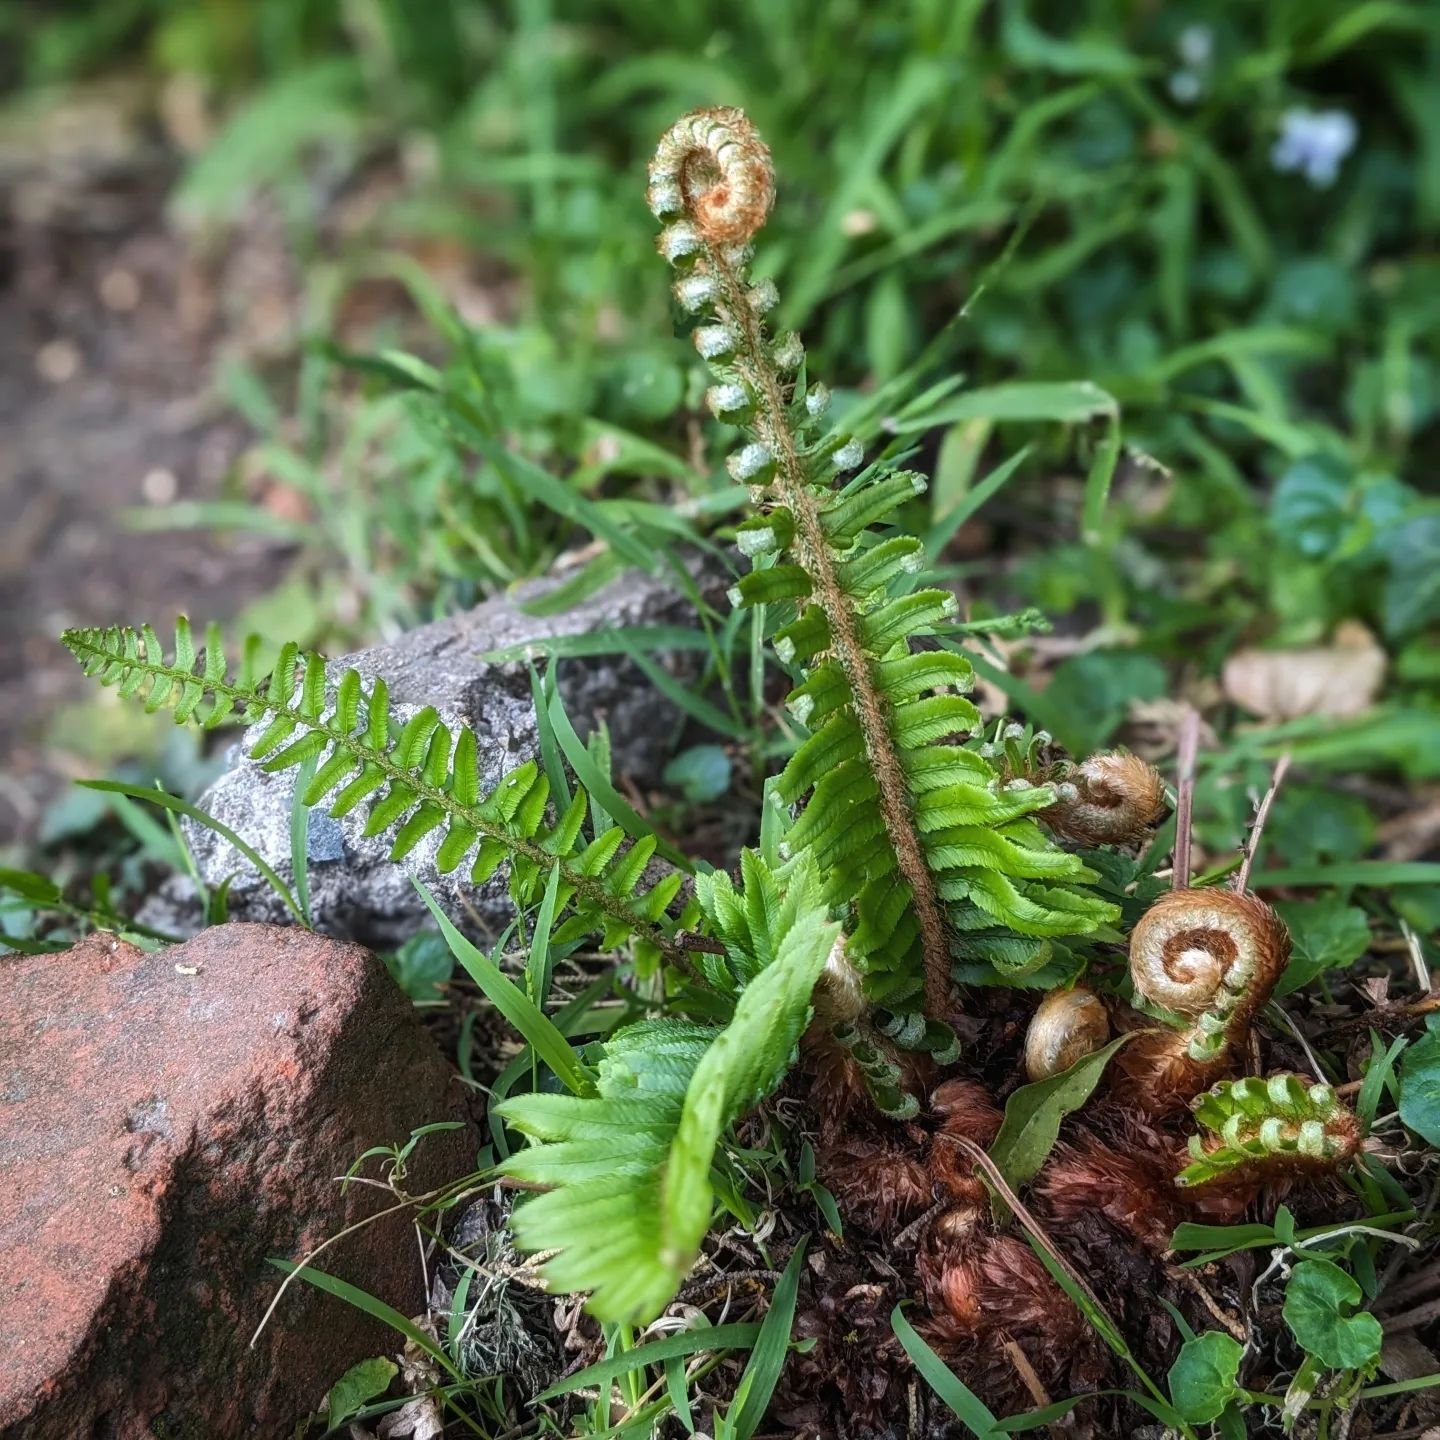 Baby fern leaves unfurling.
.
.
.
#fern #ferns #fiddlehead #fiddleheads #spring #backyardgarden #green